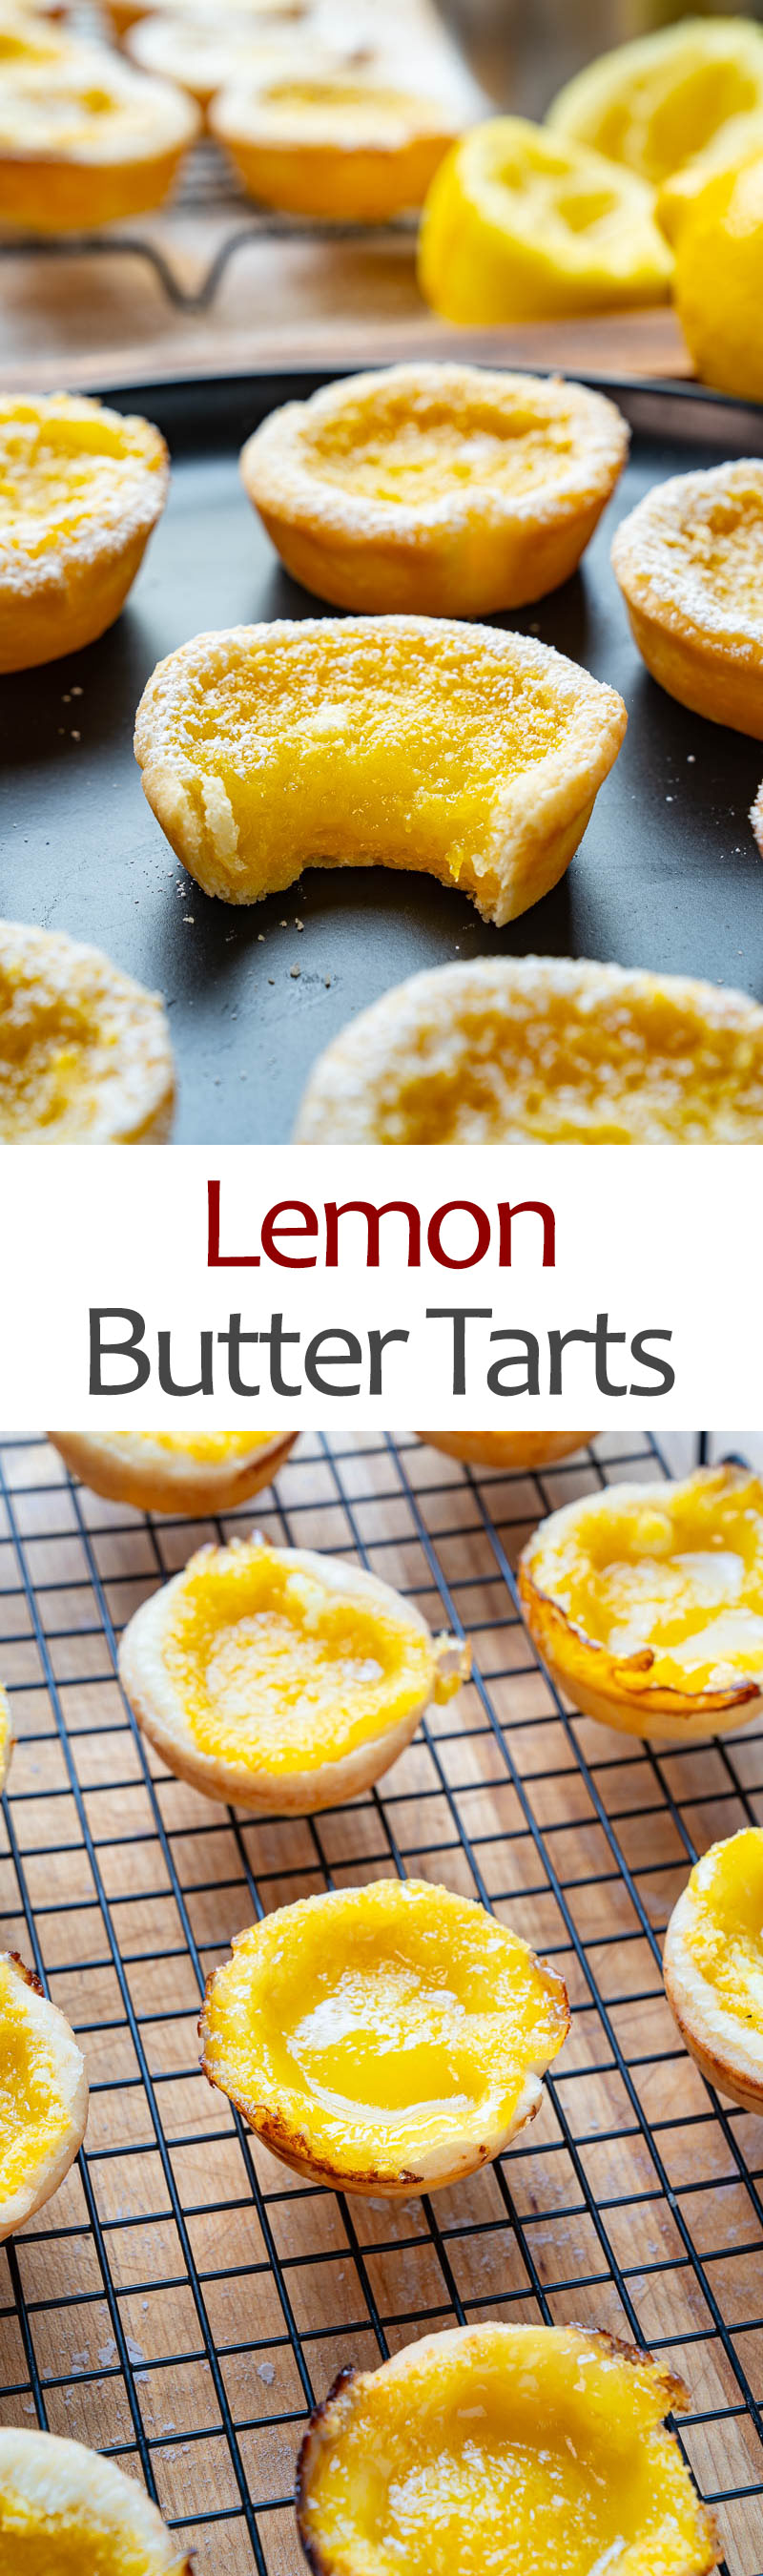 Lemon Butter Tarts